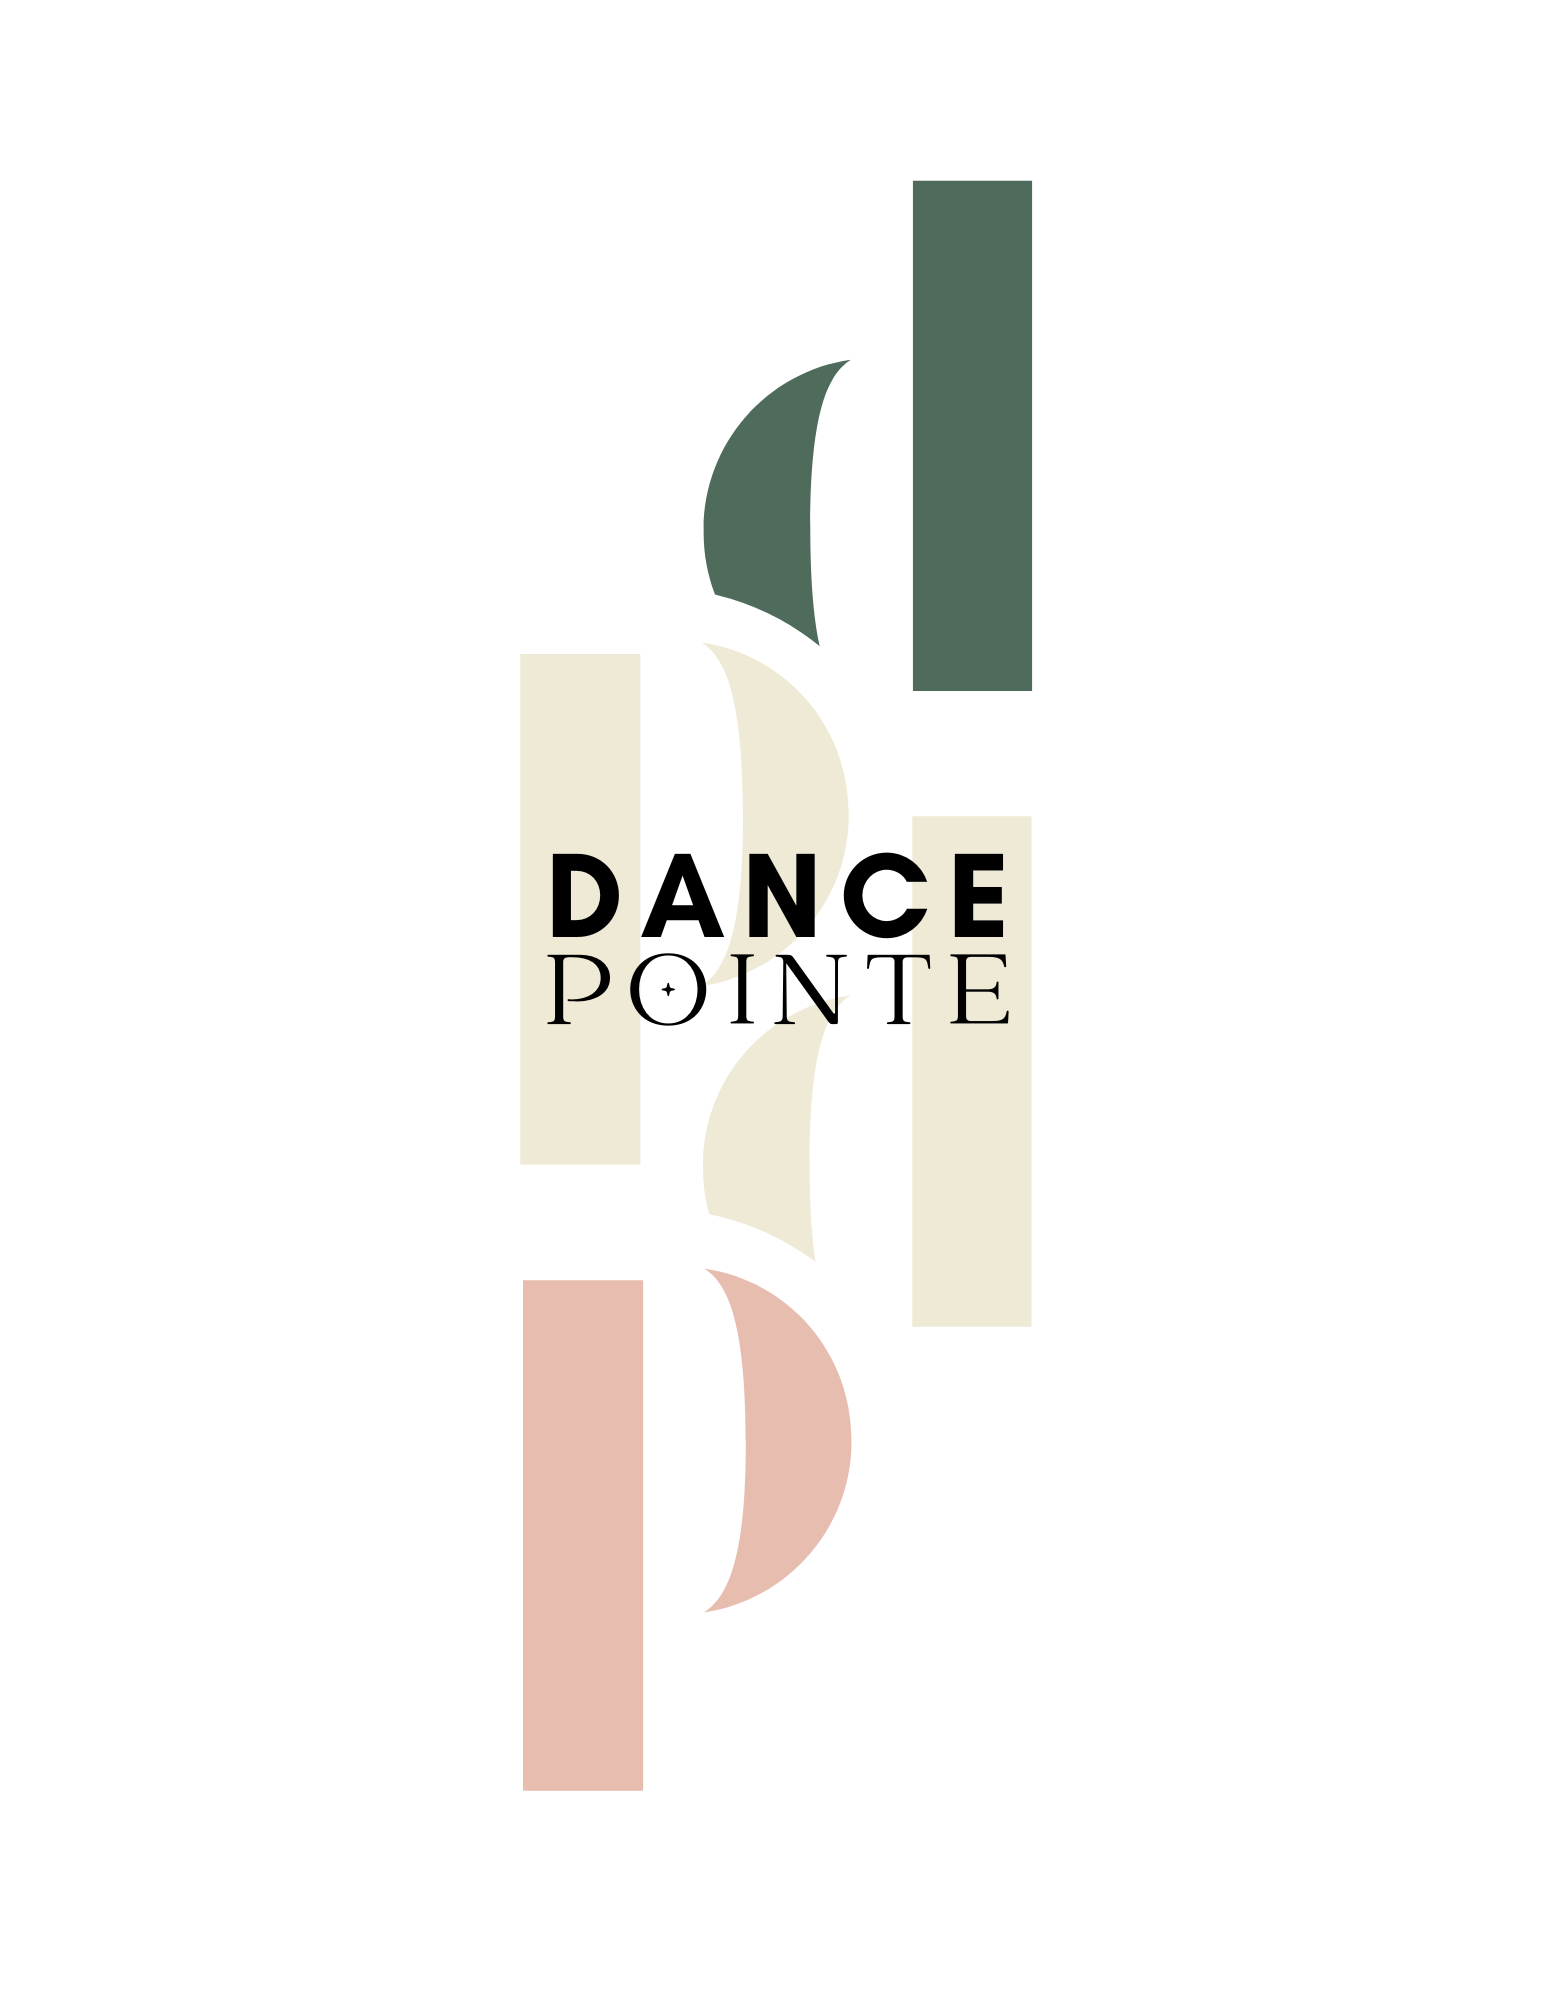 https://www.dancepointe.nl/uimg/dancepointe/sitemobtopf.png?d=132008&w=400